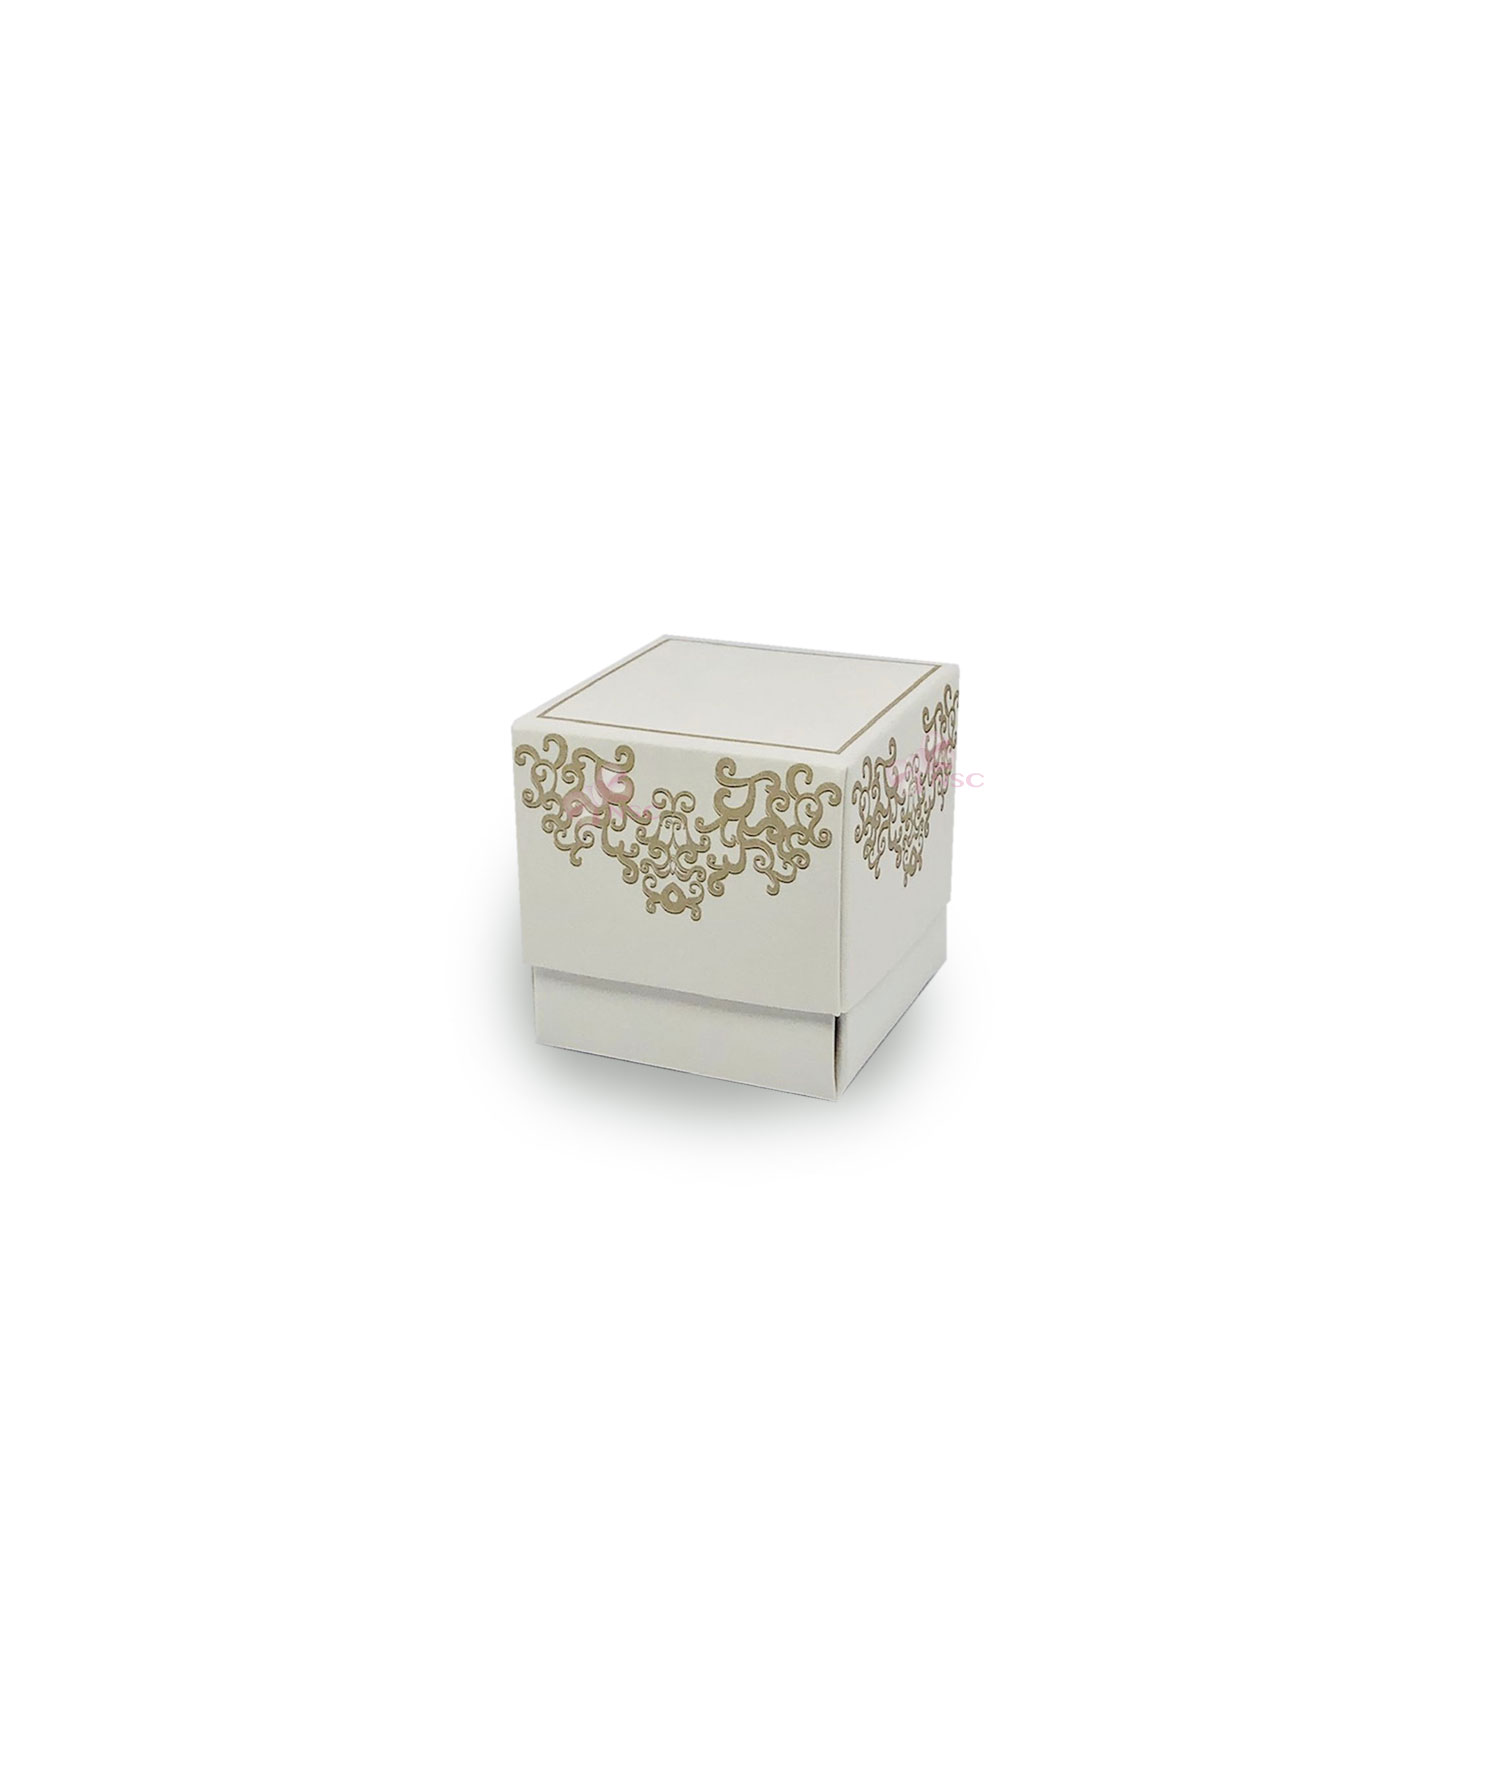 Scatola fleur chantilly bianco con confetti - Mobilia Store Home & Favours